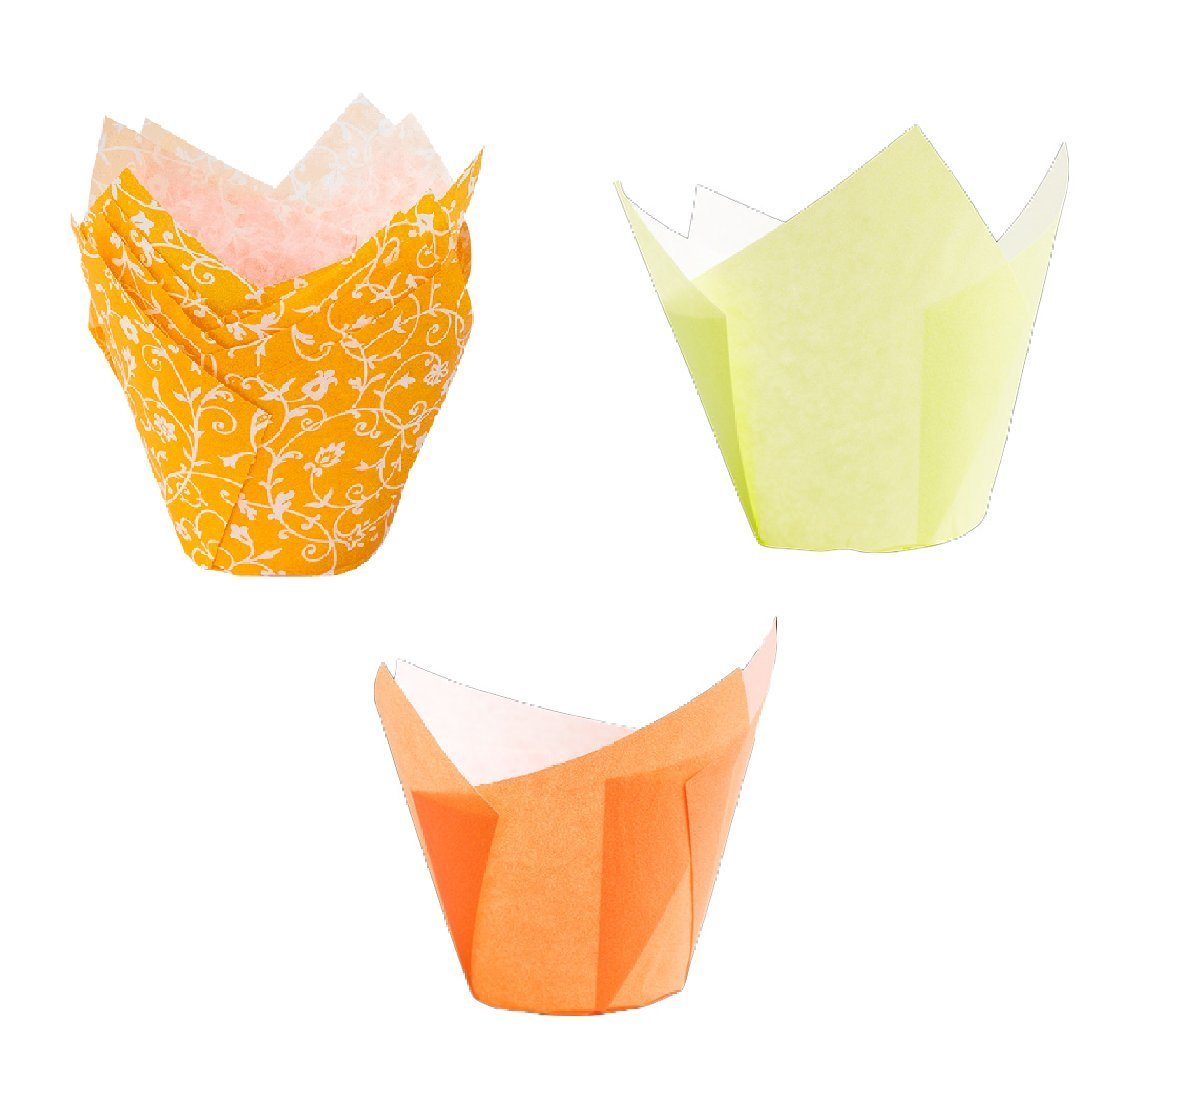 Demmler Muffinform Tulip-Wrap Set Gelb/Orange - Tulpenförmige Muffinförmchen -, zum stilvollen Anrichten von Muffins und Cupcakes - Made in Germany von Demmler